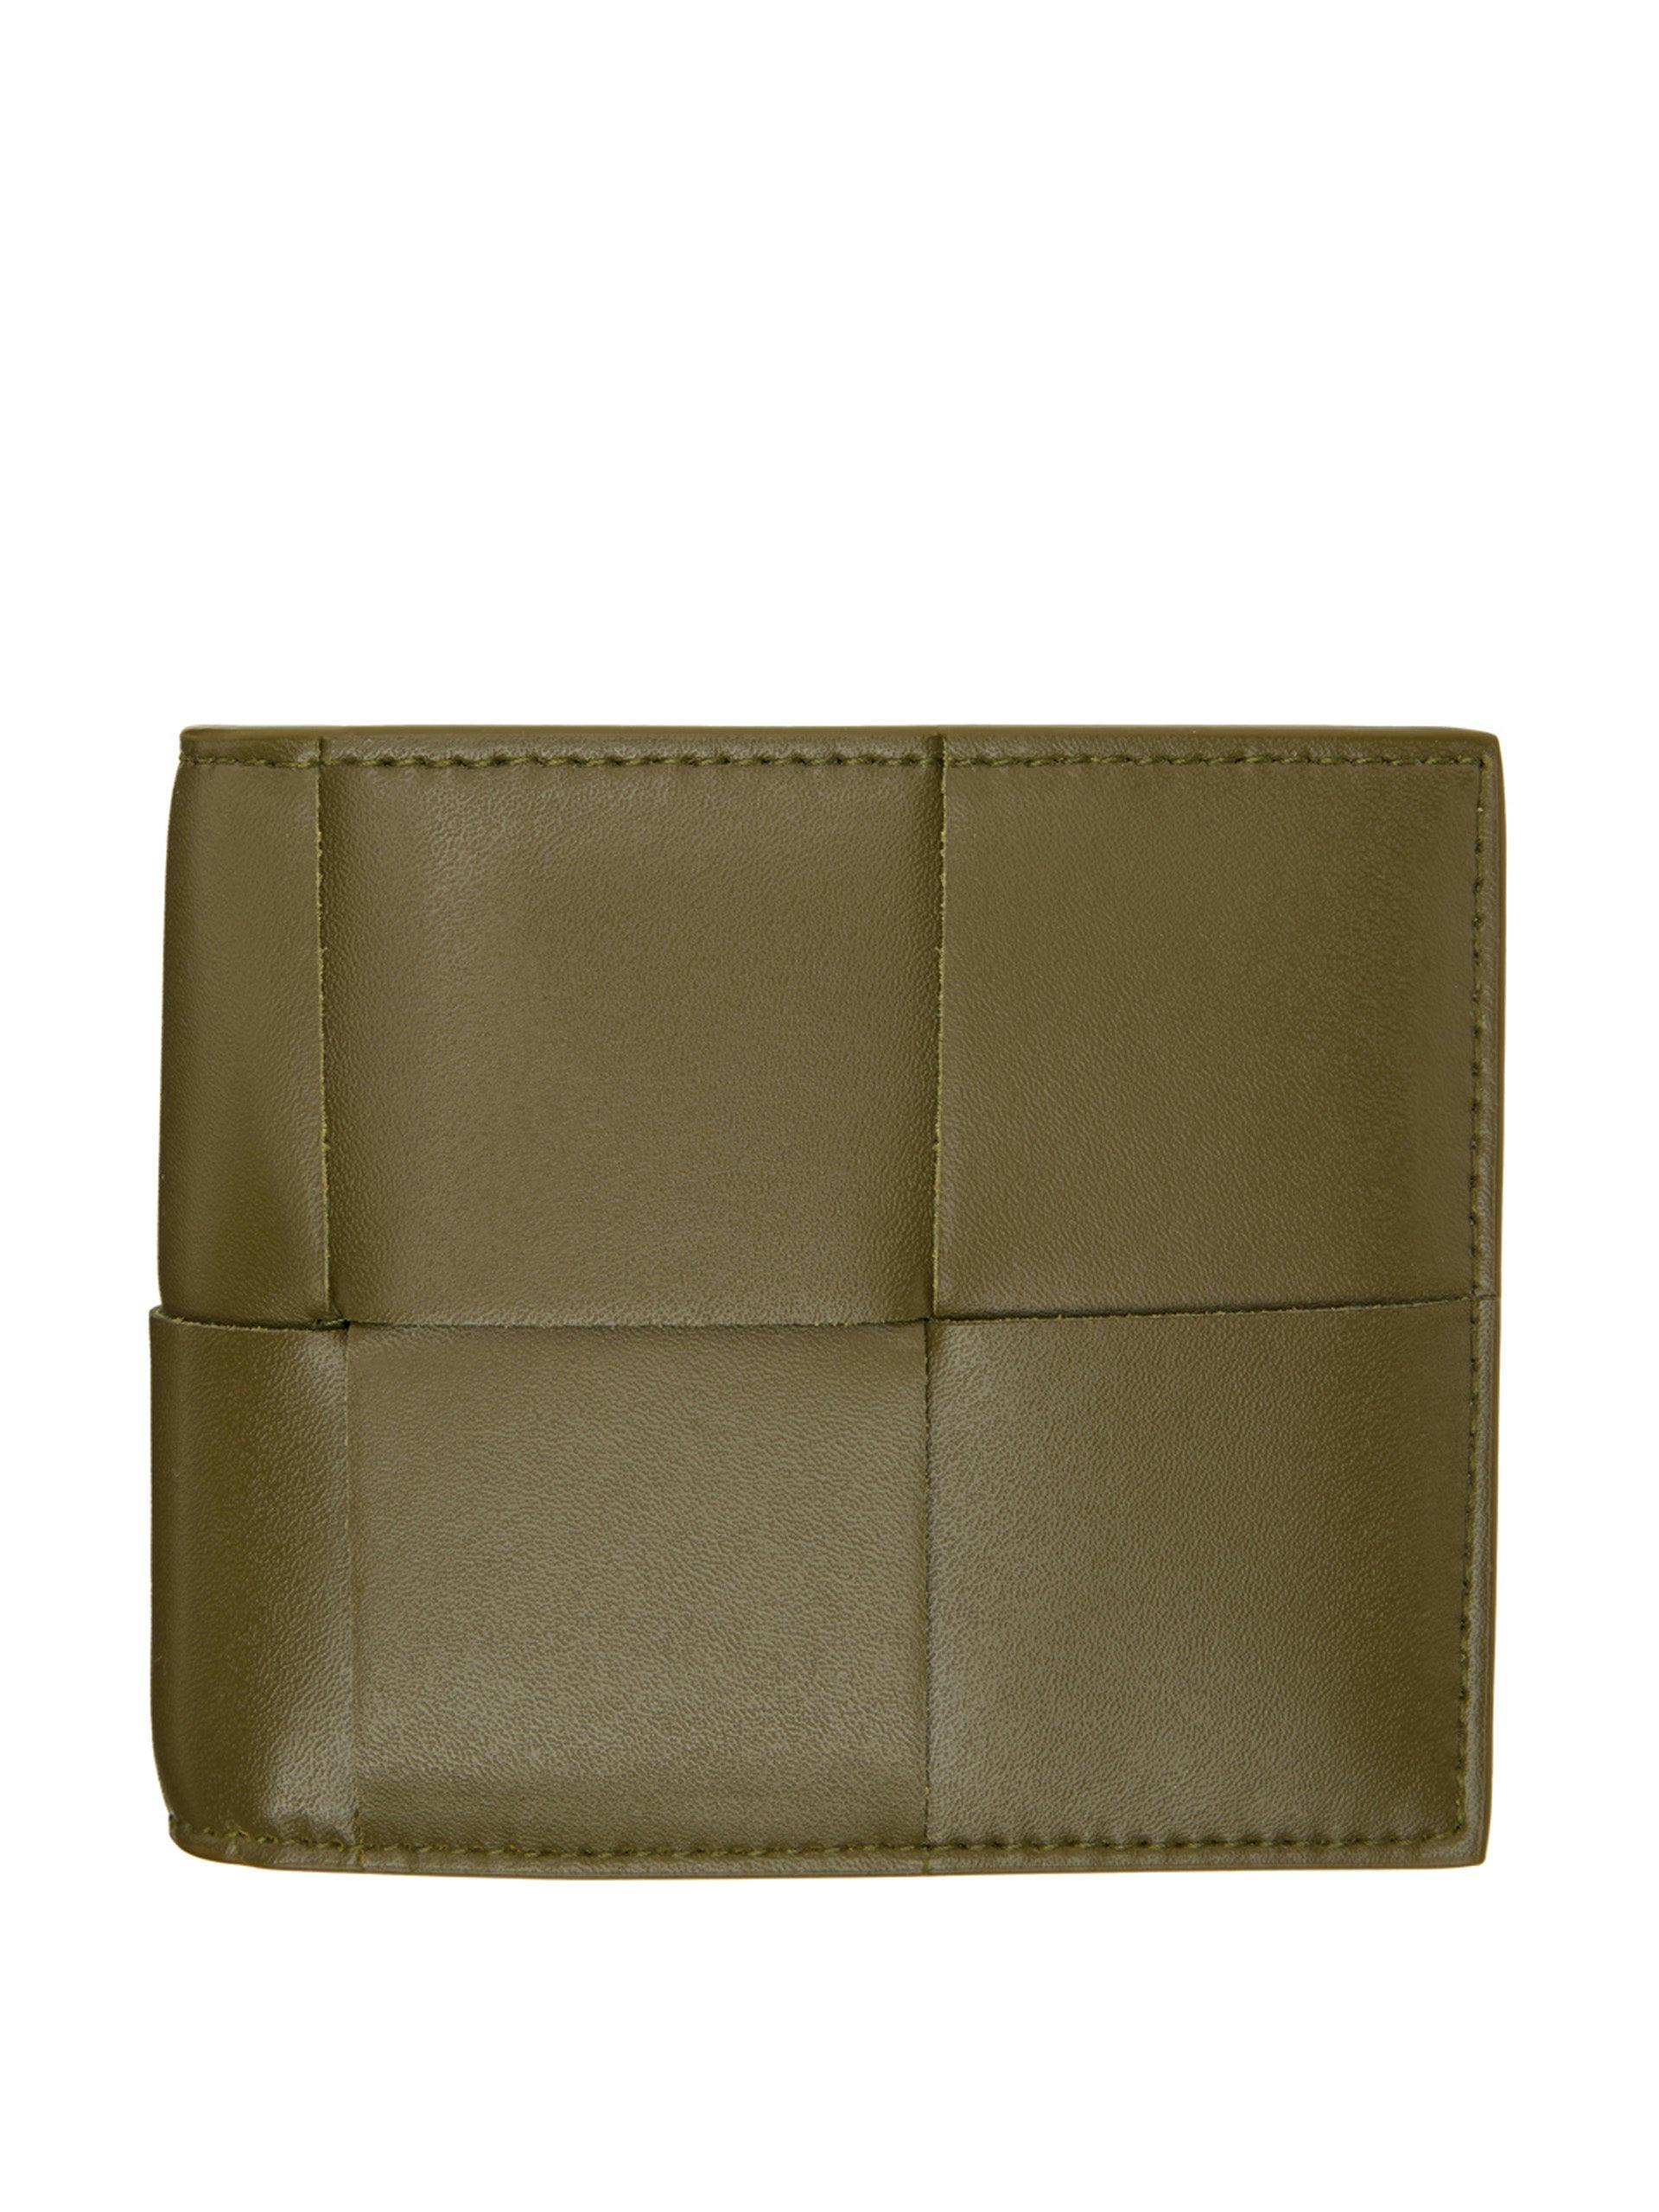 Cassette wallet in khaki leather